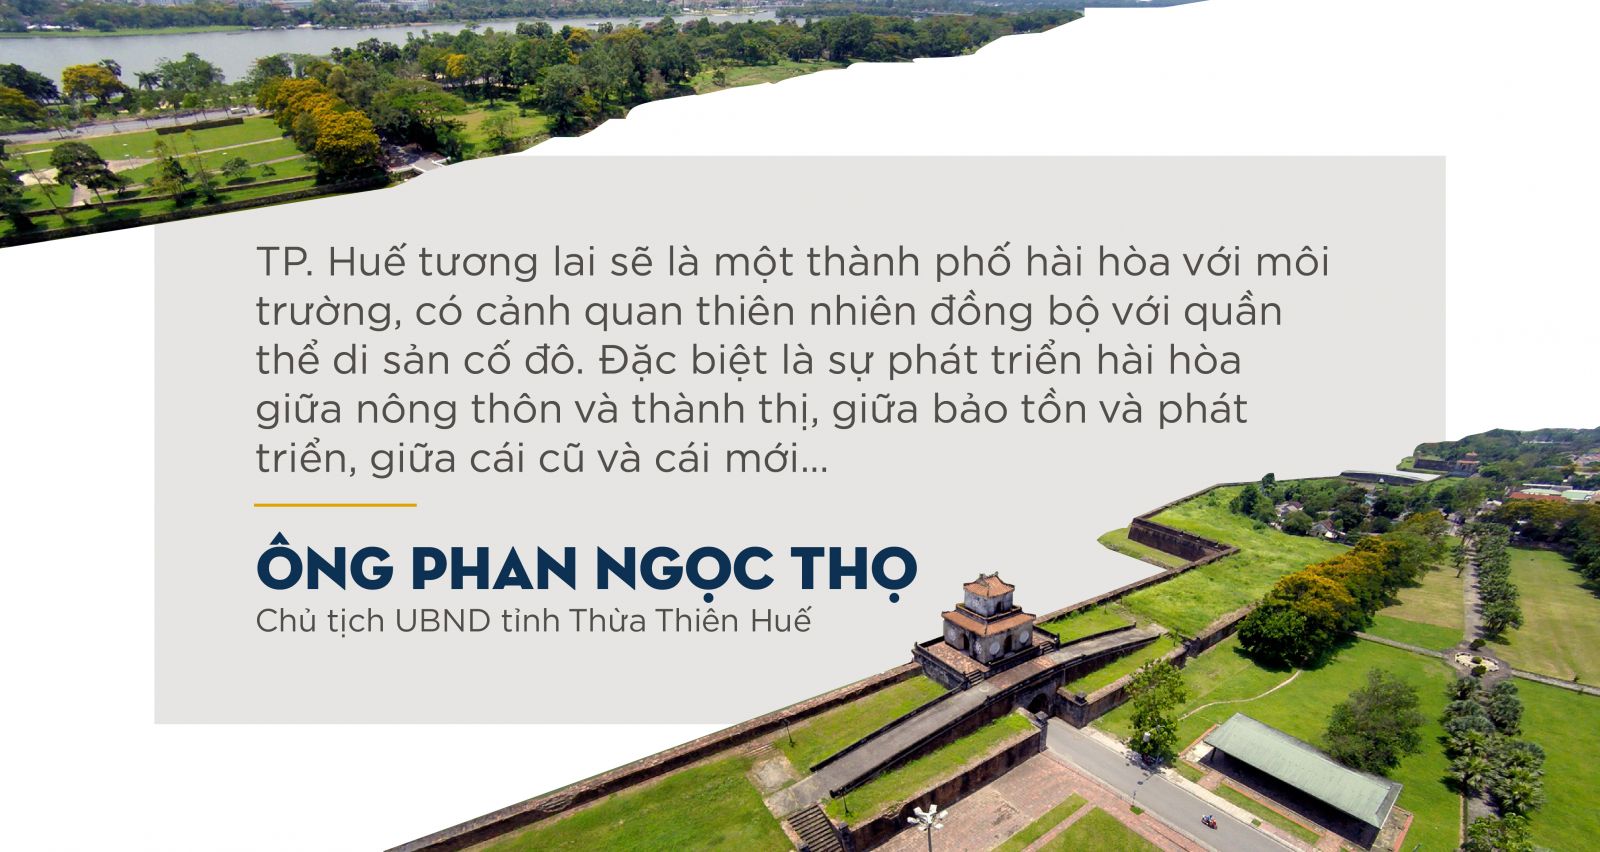 Chủ tịch UBND tỉnh Thừa Thiên - Huế Phan Ngọc Thọ: Phát triển luôn phải đảm bảo sự hài hòa